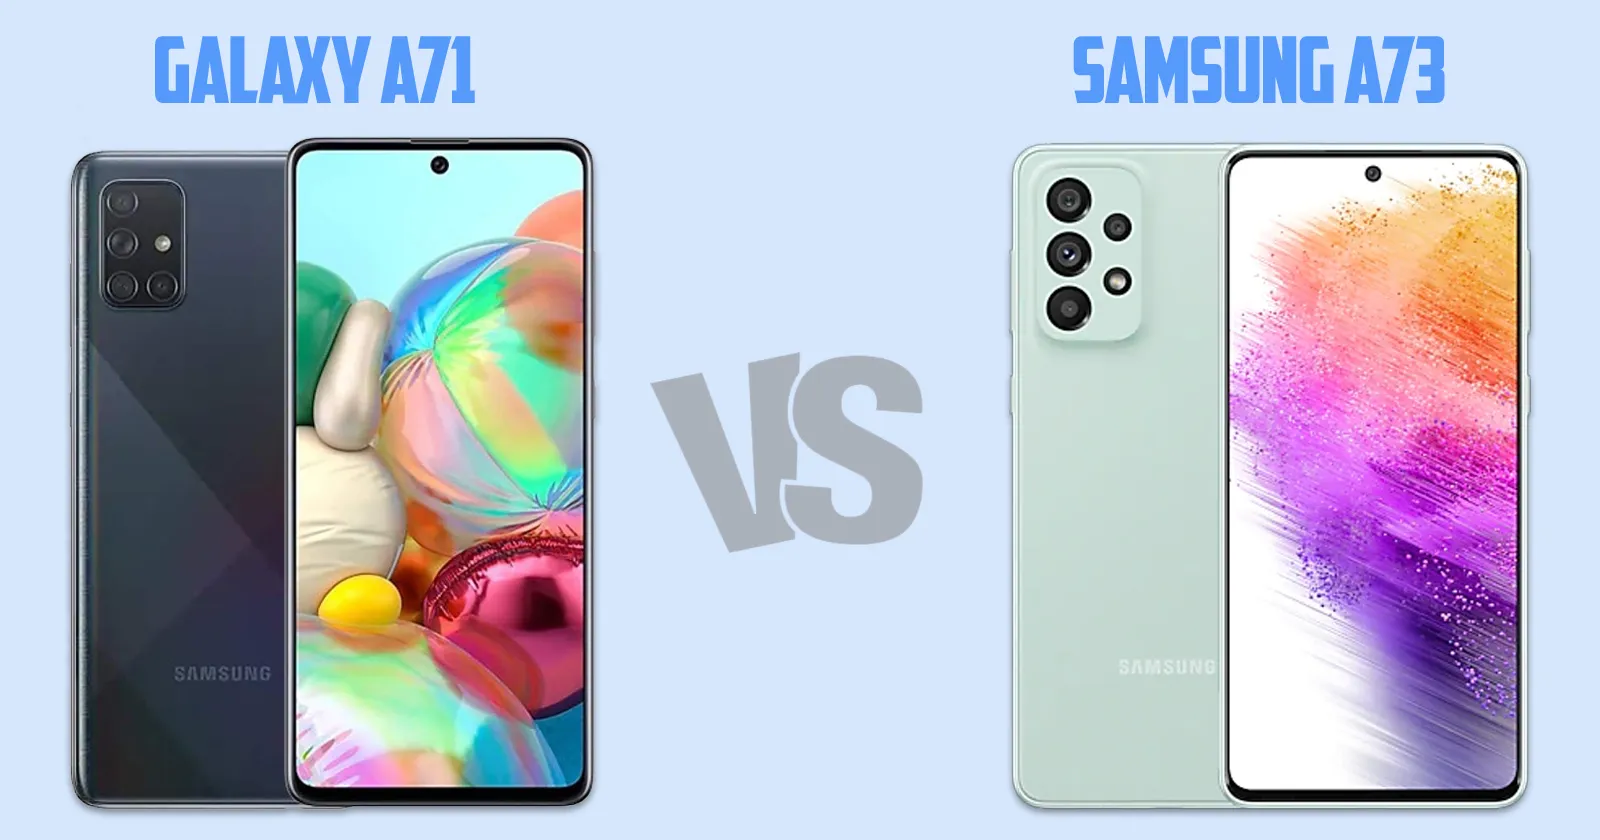 Samsung Galaxy A71 vs Samsung Galaxy A73 [ Full Comparison ]